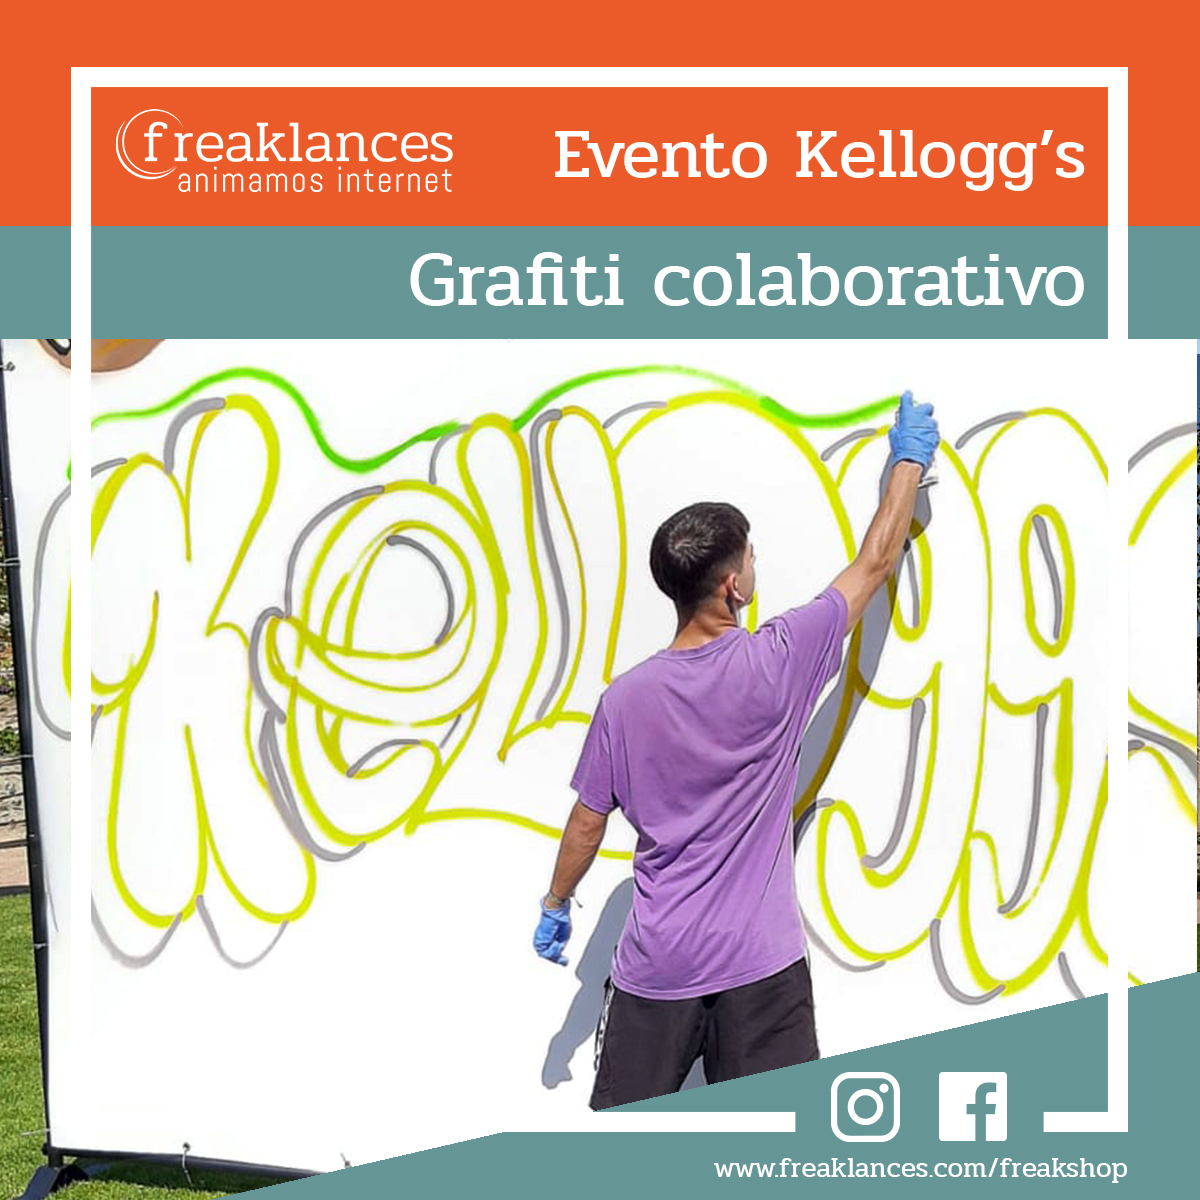 Evento de Kellogg's con Smarty Events donde se realizó un grafiti colaborativo.